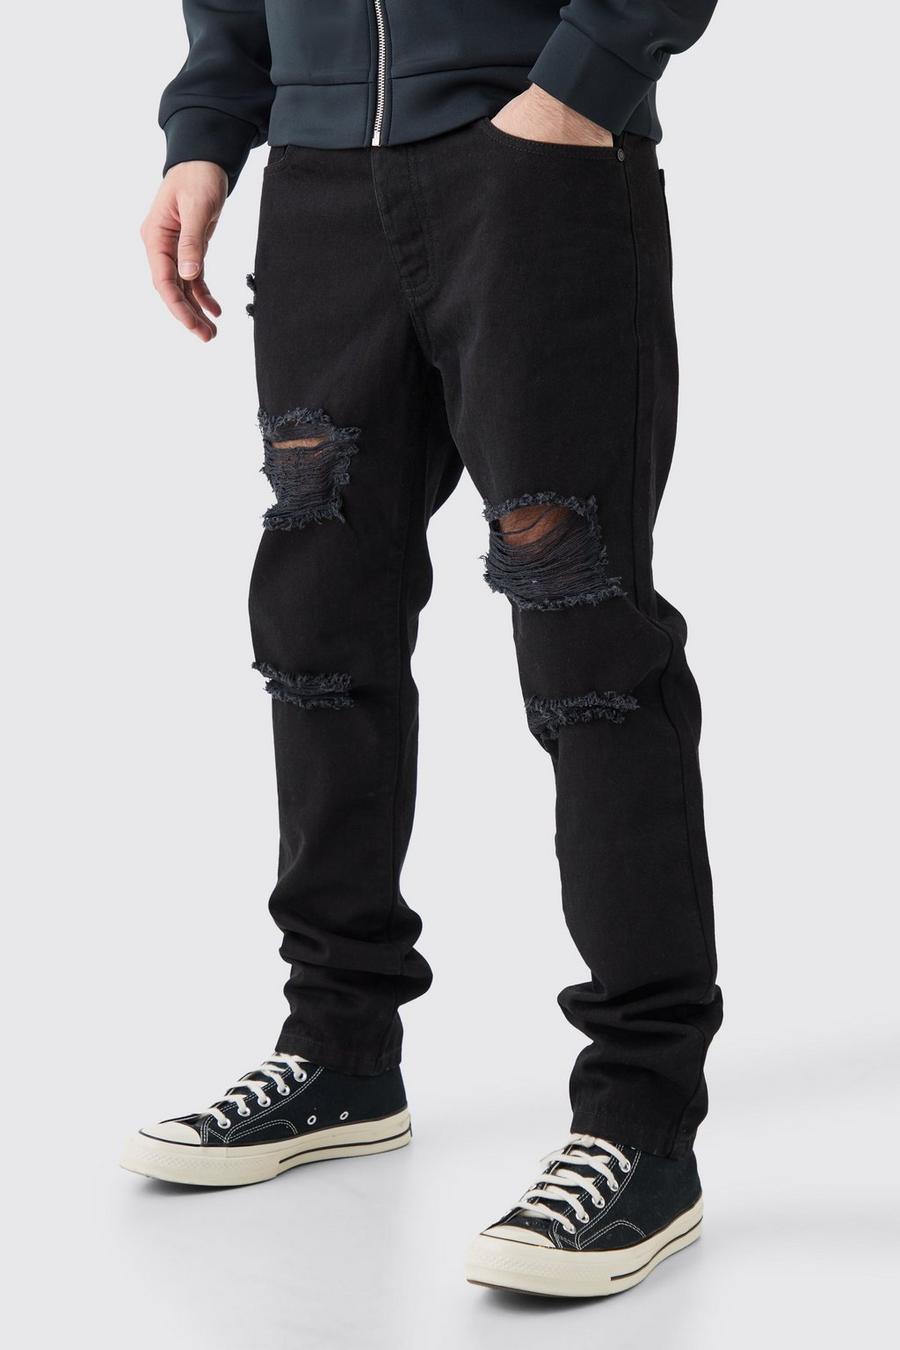 Jeans Slim Fit in True Black in denim rigido con strappi all over